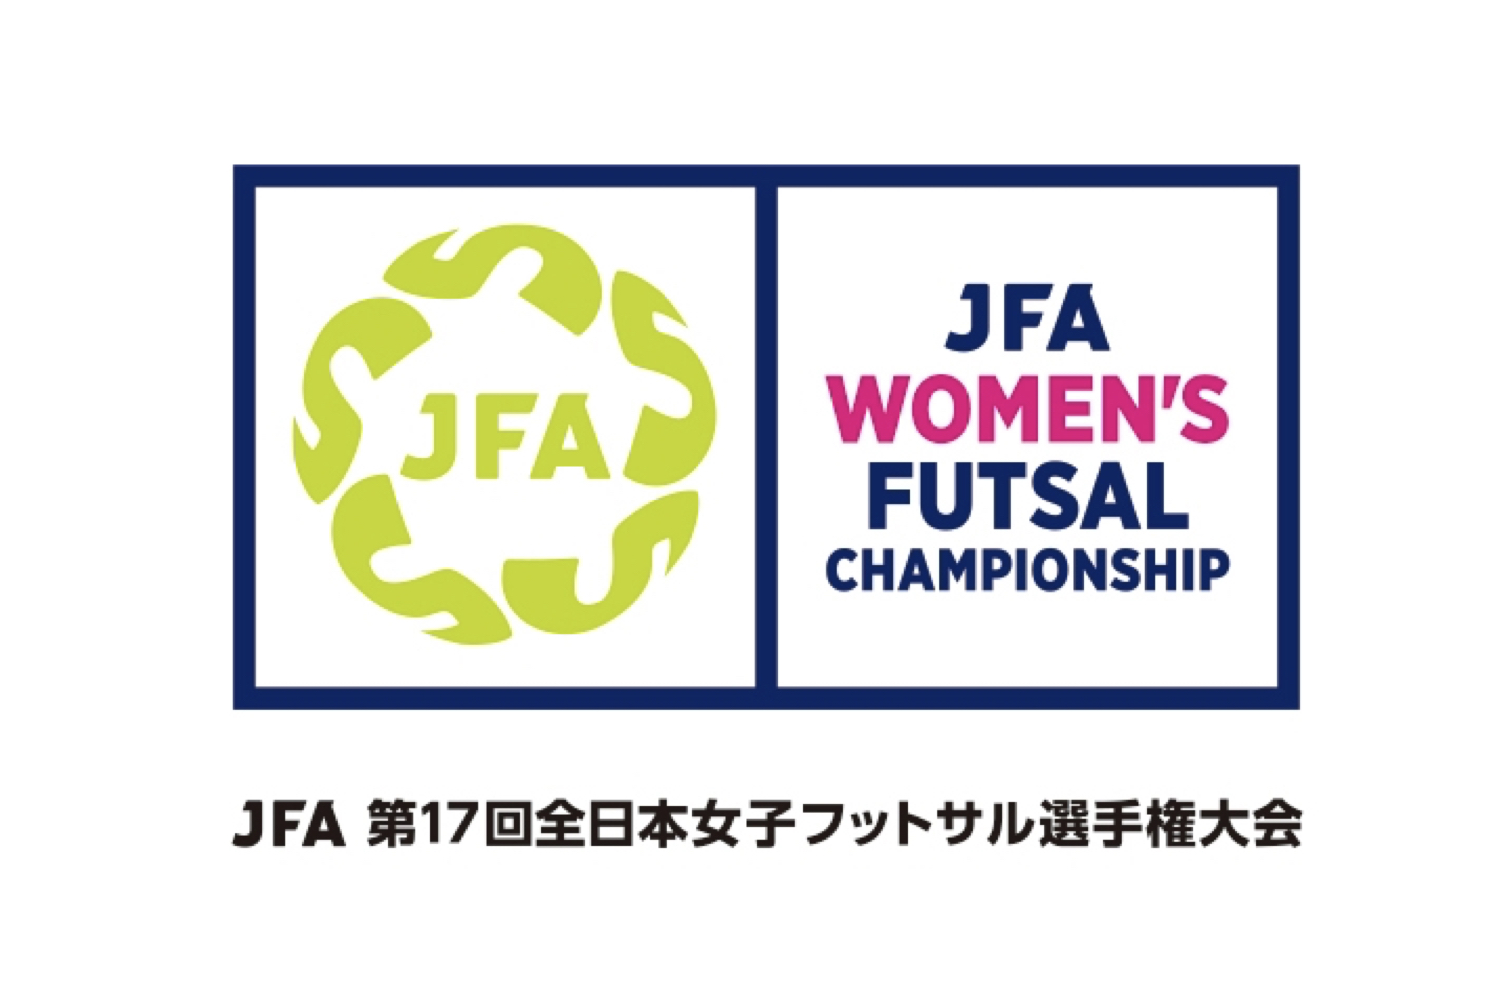 第17回全日本女子フットサル選手権 決勝戦は昨年と同じカードに 結果はswhレディース西宮が5年ぶり2度目の優勝 フットサル全力応援メディア Sal